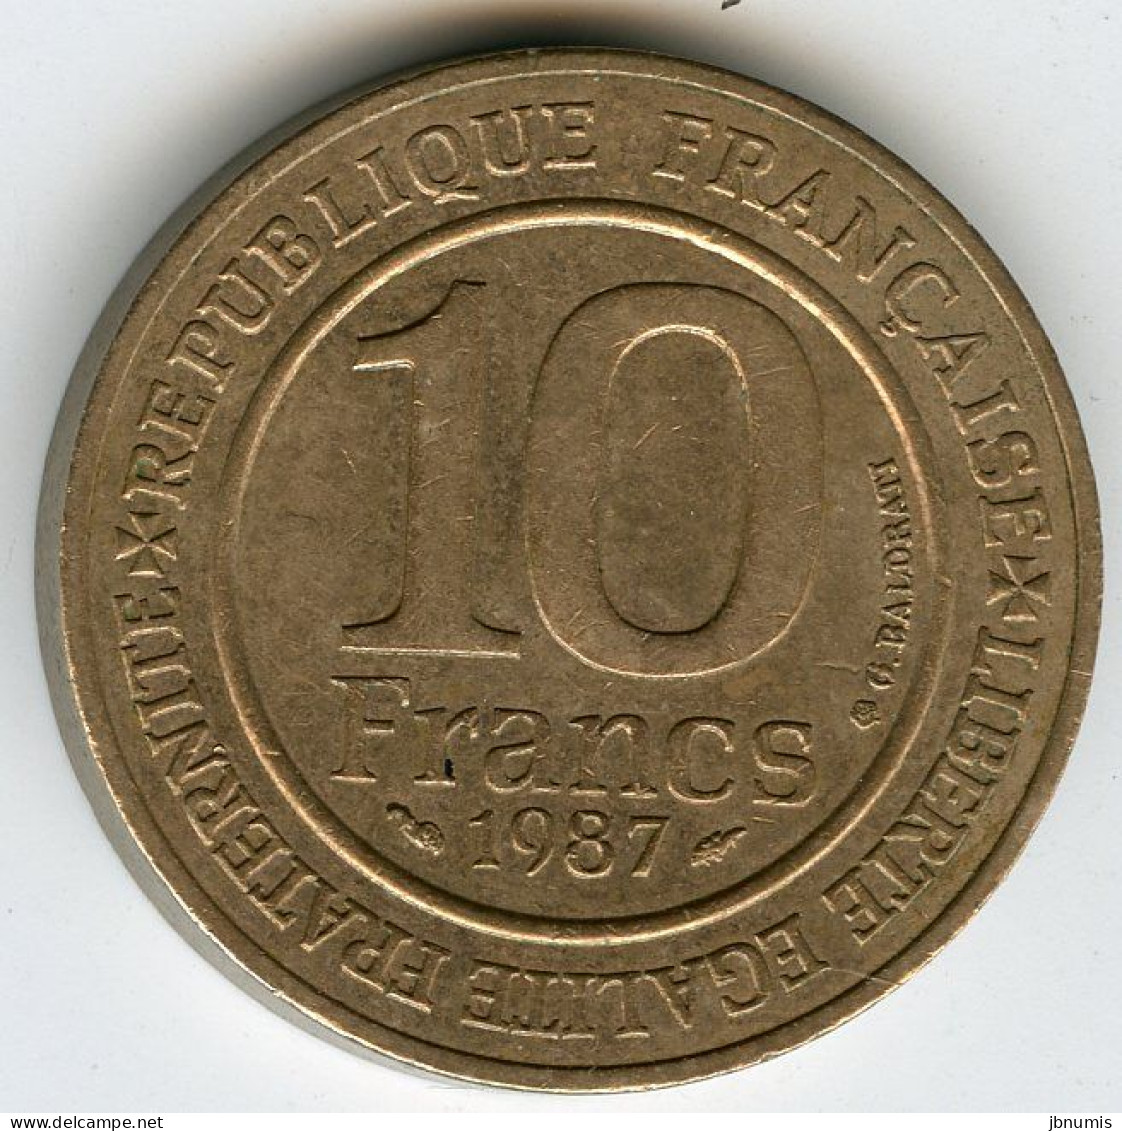 France 10 Francs 1987 Hugues Capet 987 GAD 820 KM 961d - 10 Francs